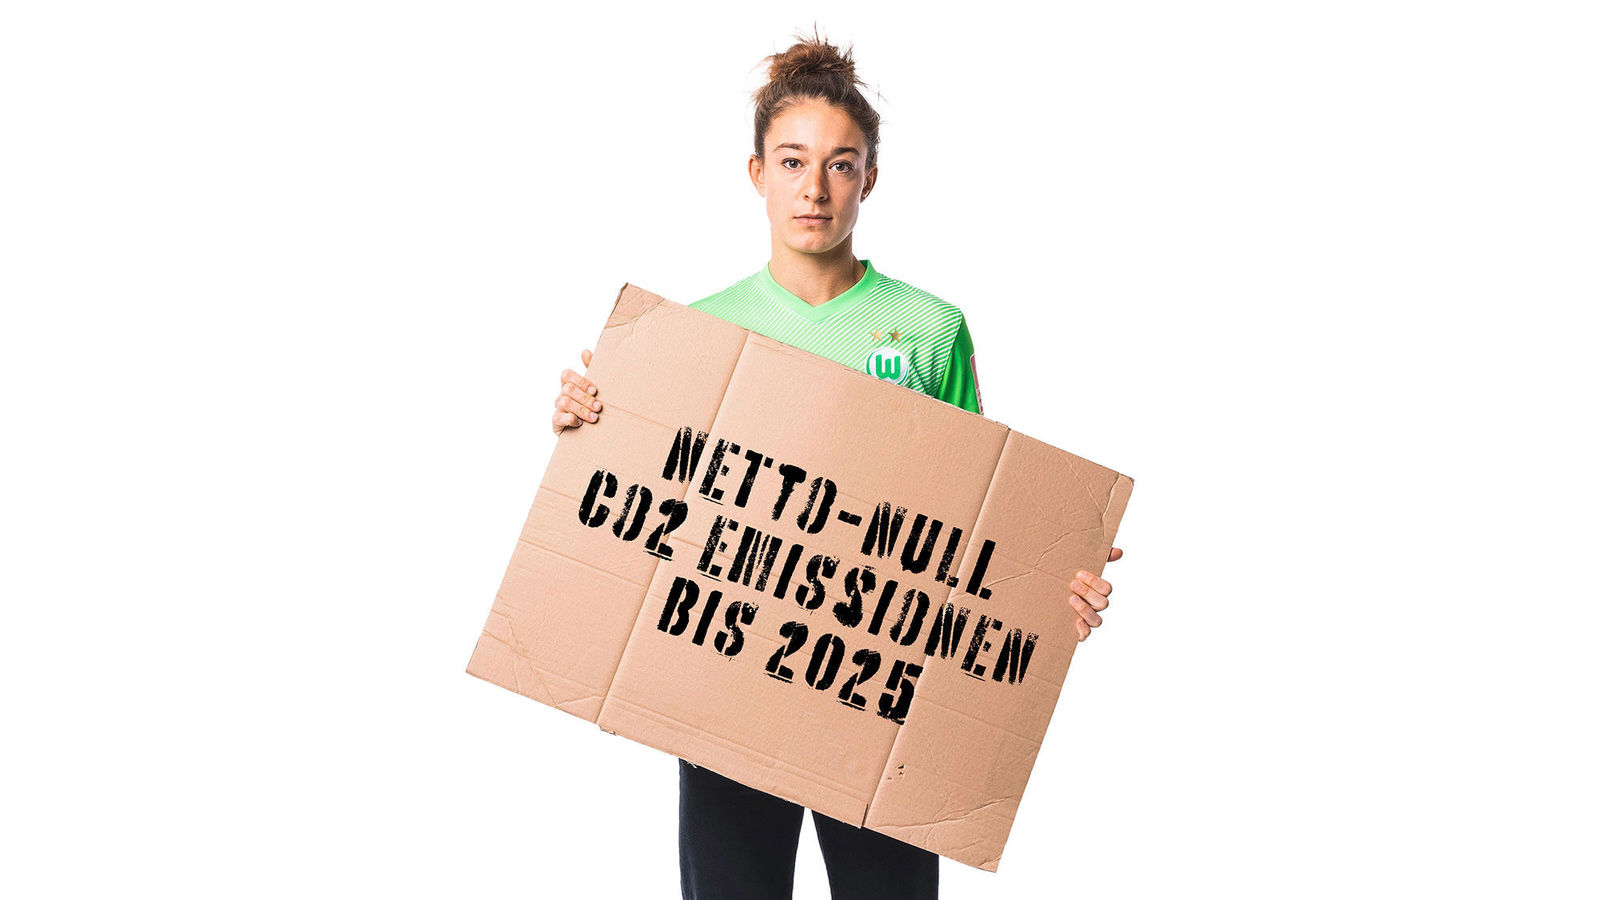 Story: VfL Wolfsburg geht beim Klimaschutz voran